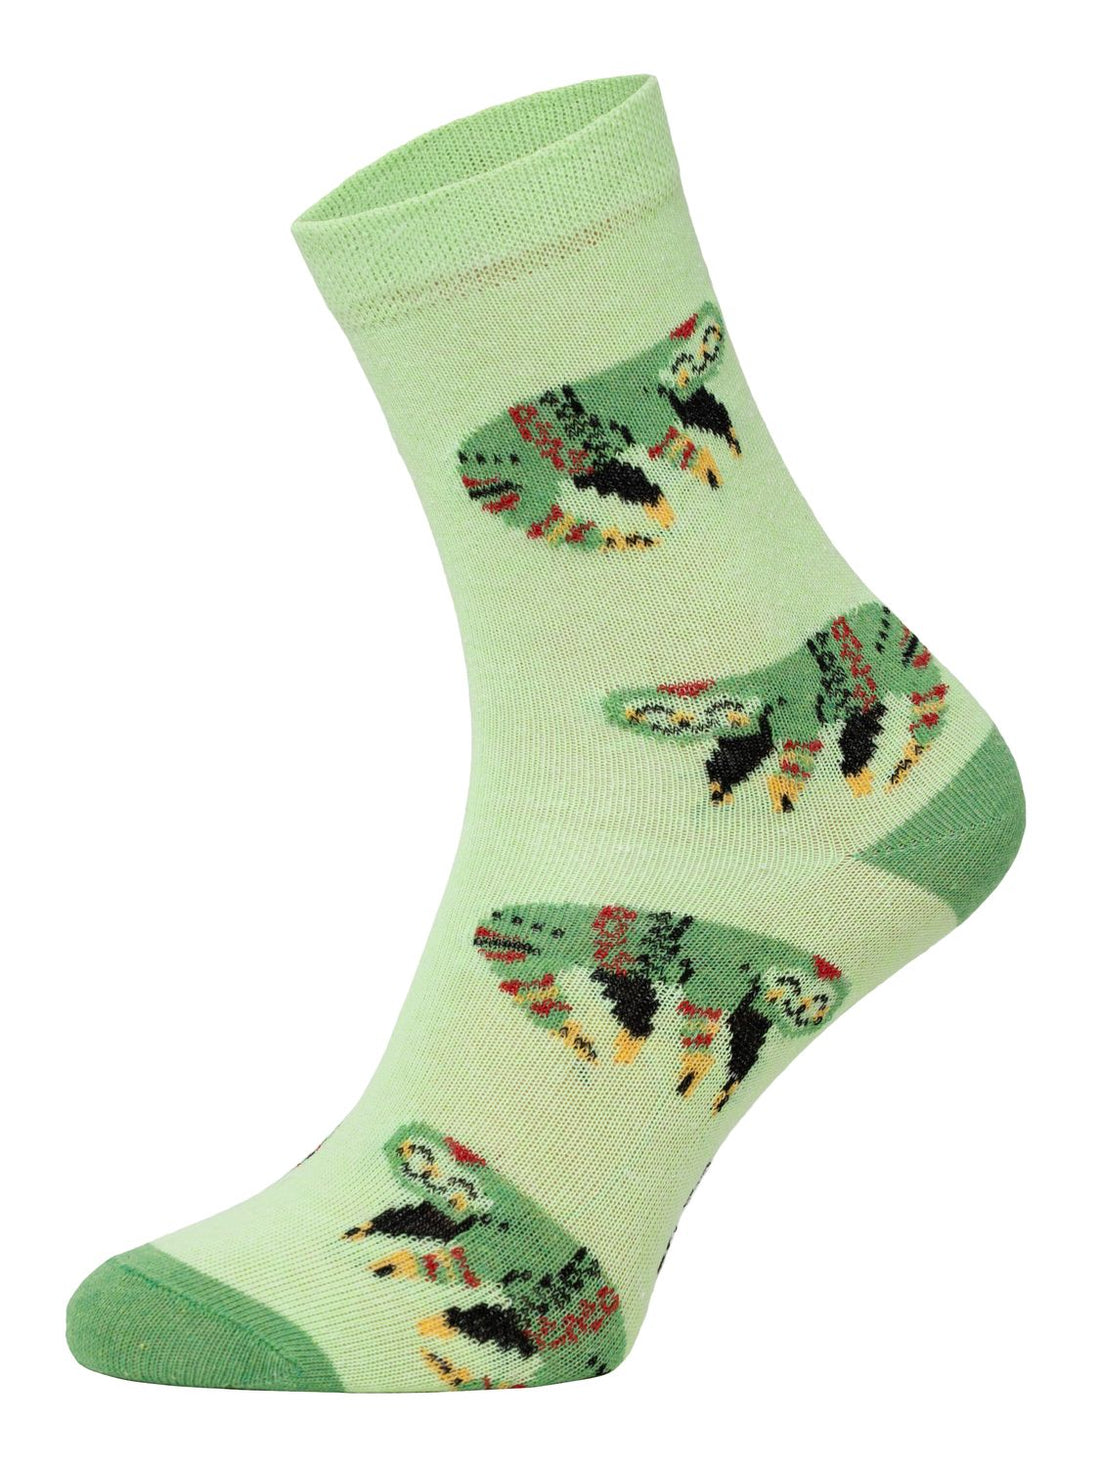 ChiliLifestyle Socken Faultier für Kinder